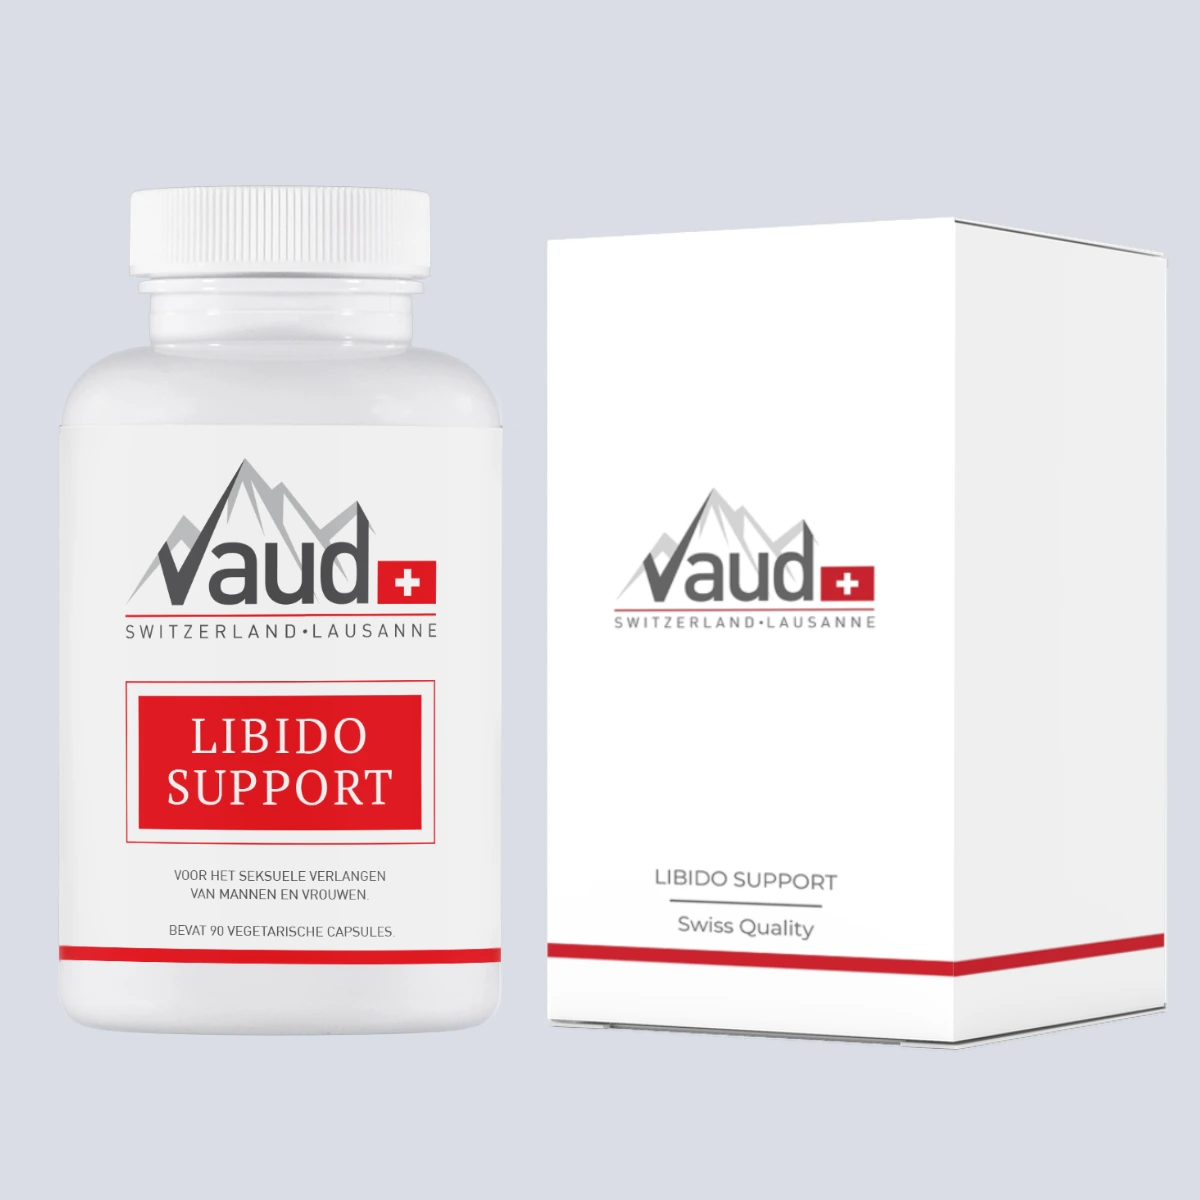 libido supplement